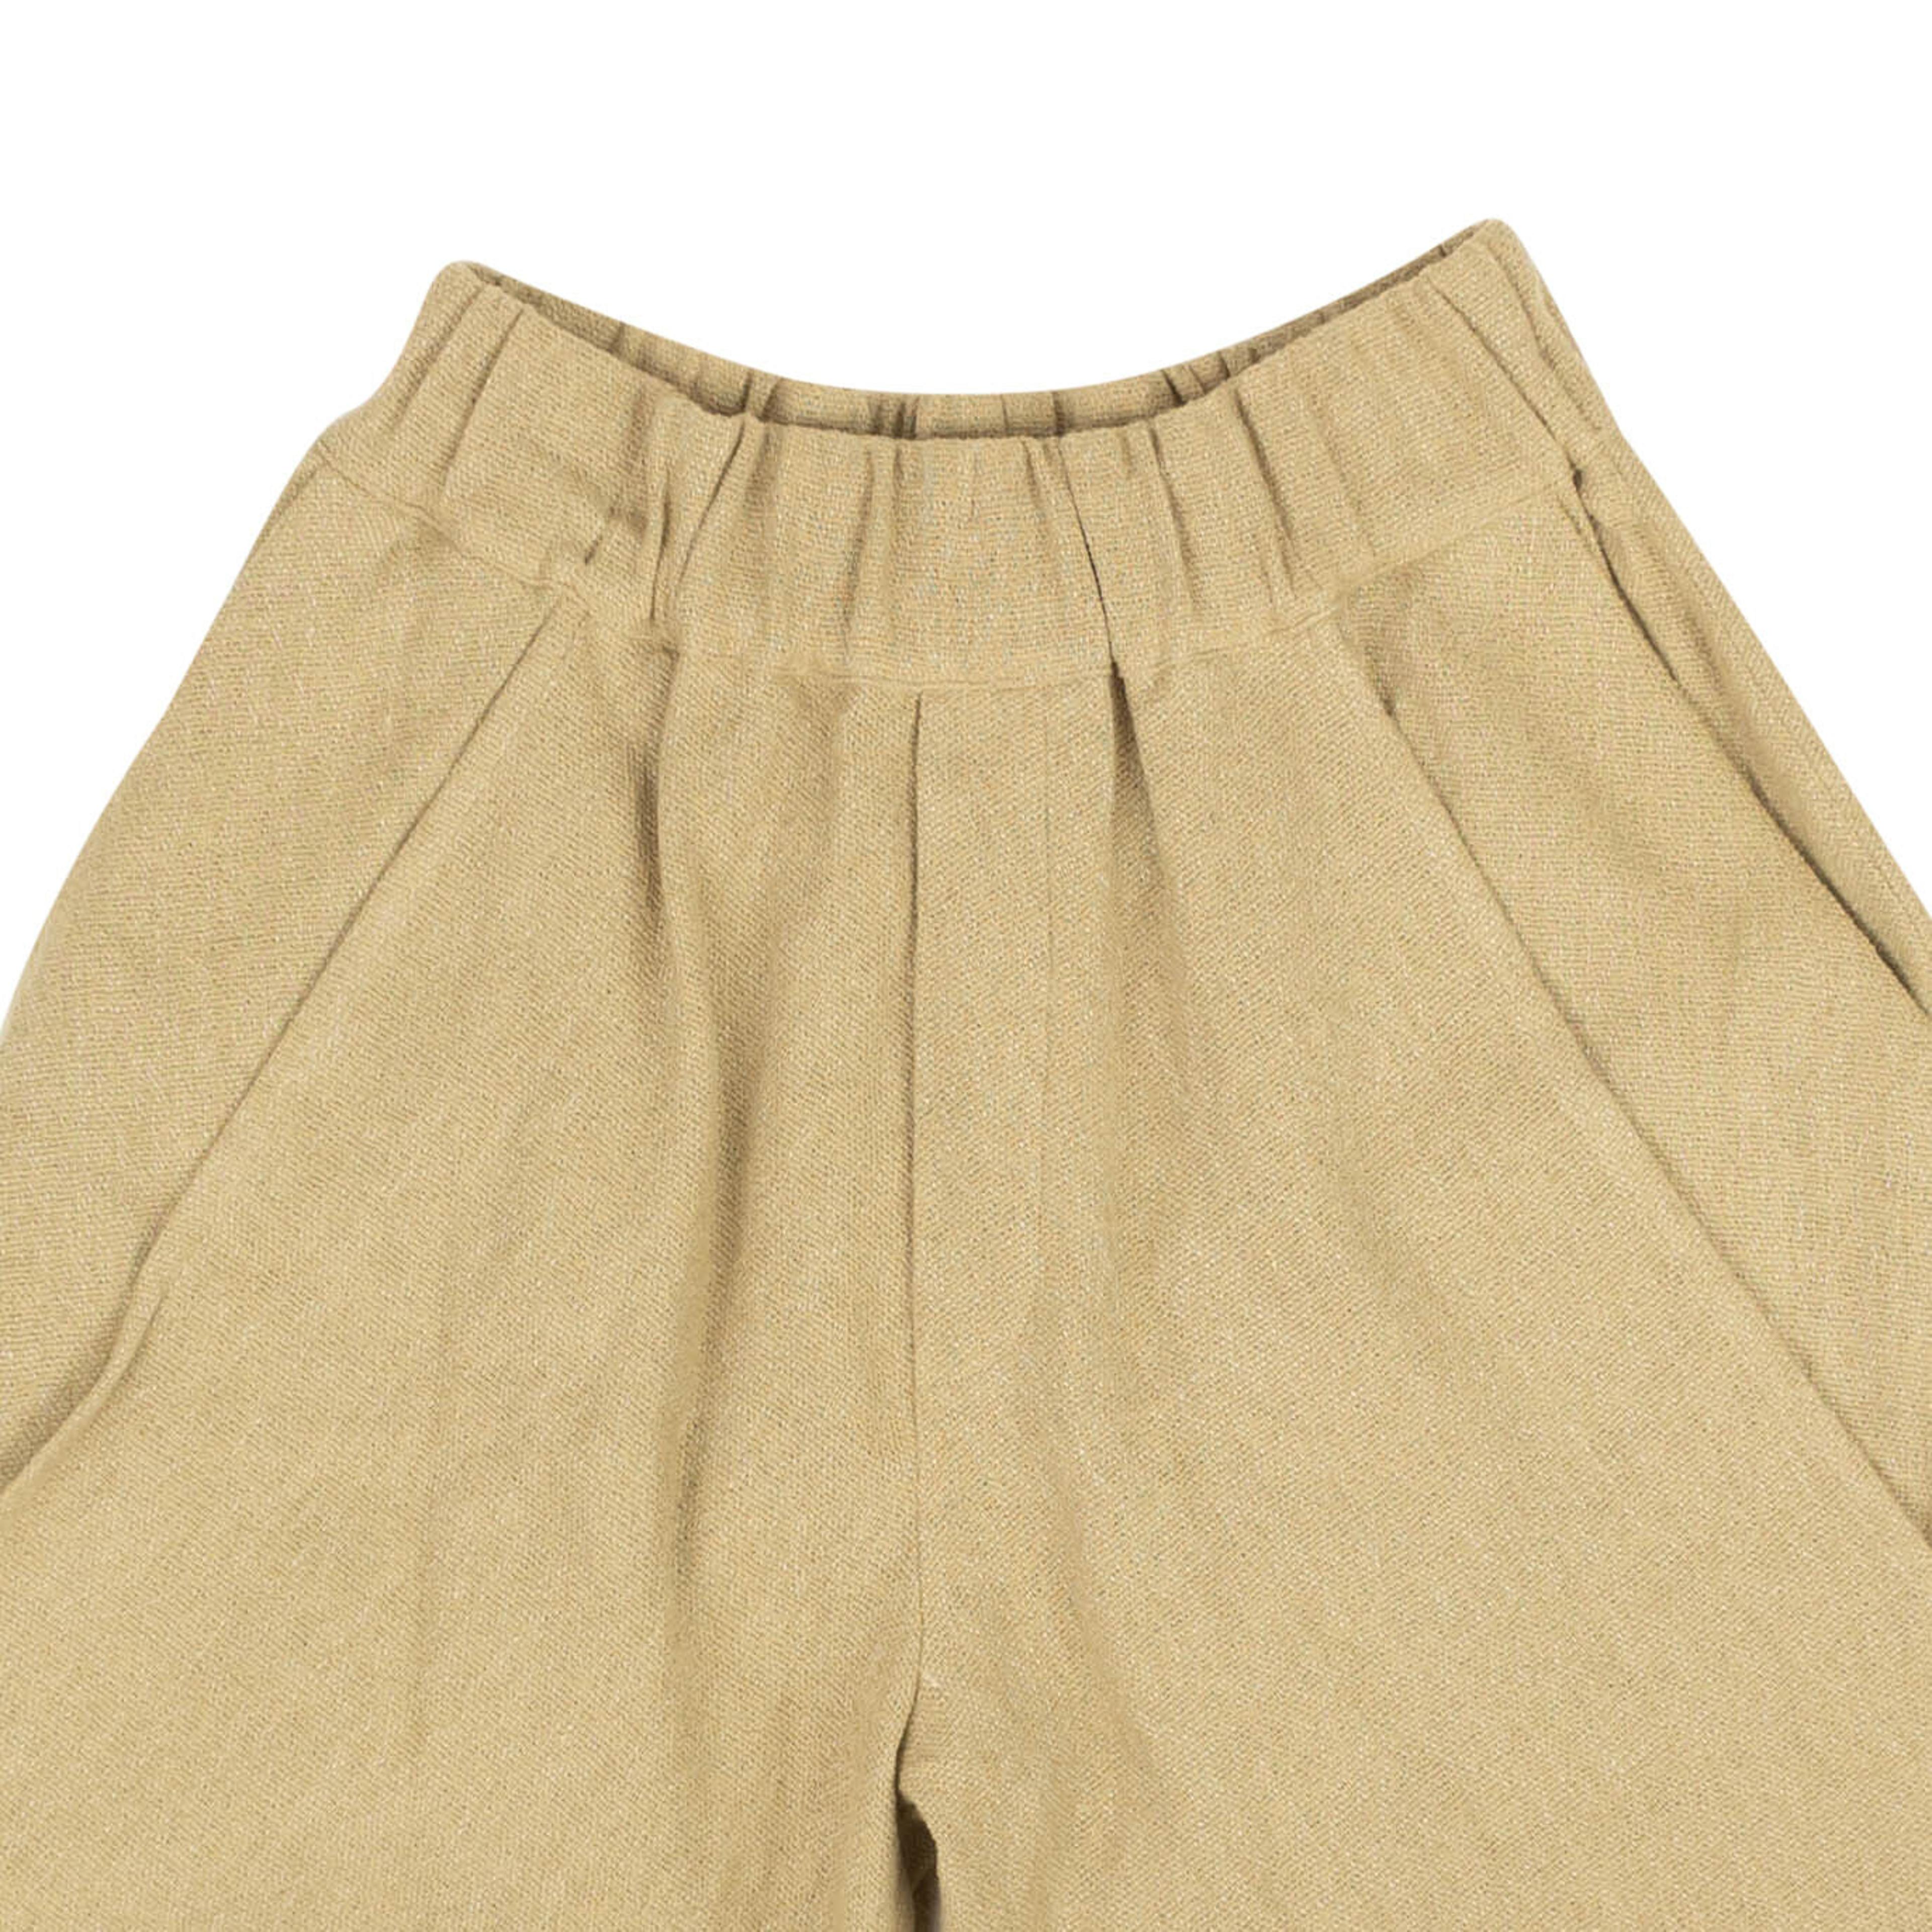 Alternate View 1 of Beige Linen Blend Shorts